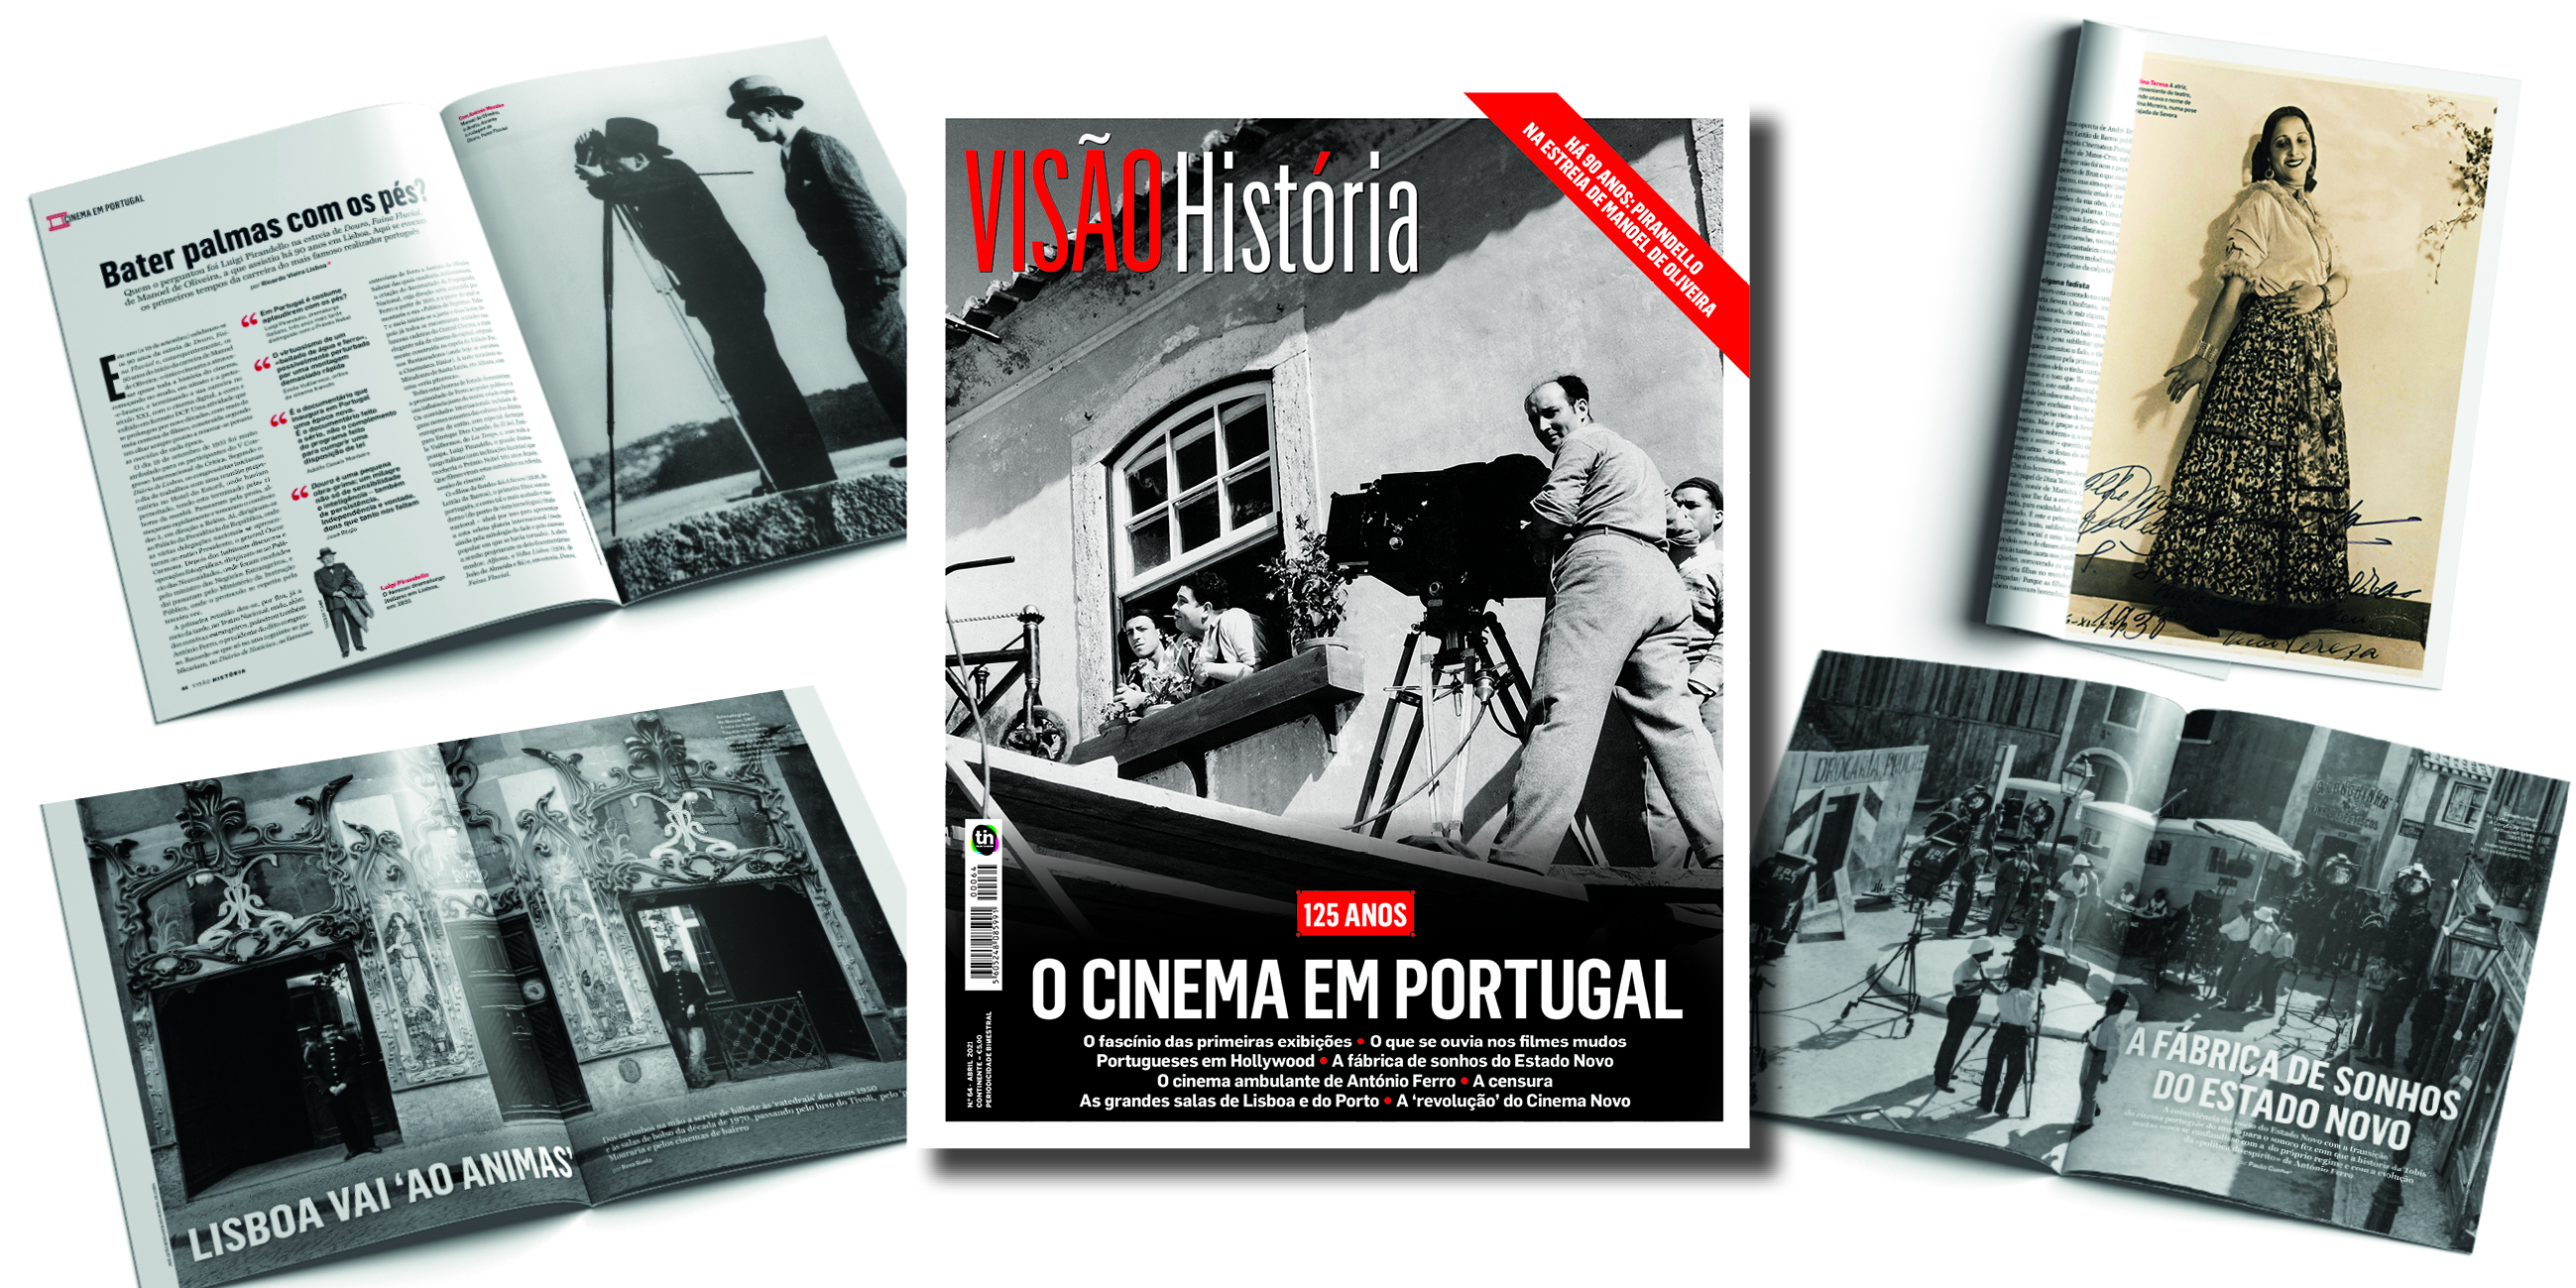 Visão A magia do cinema em Portugal, na VISÃO História foto